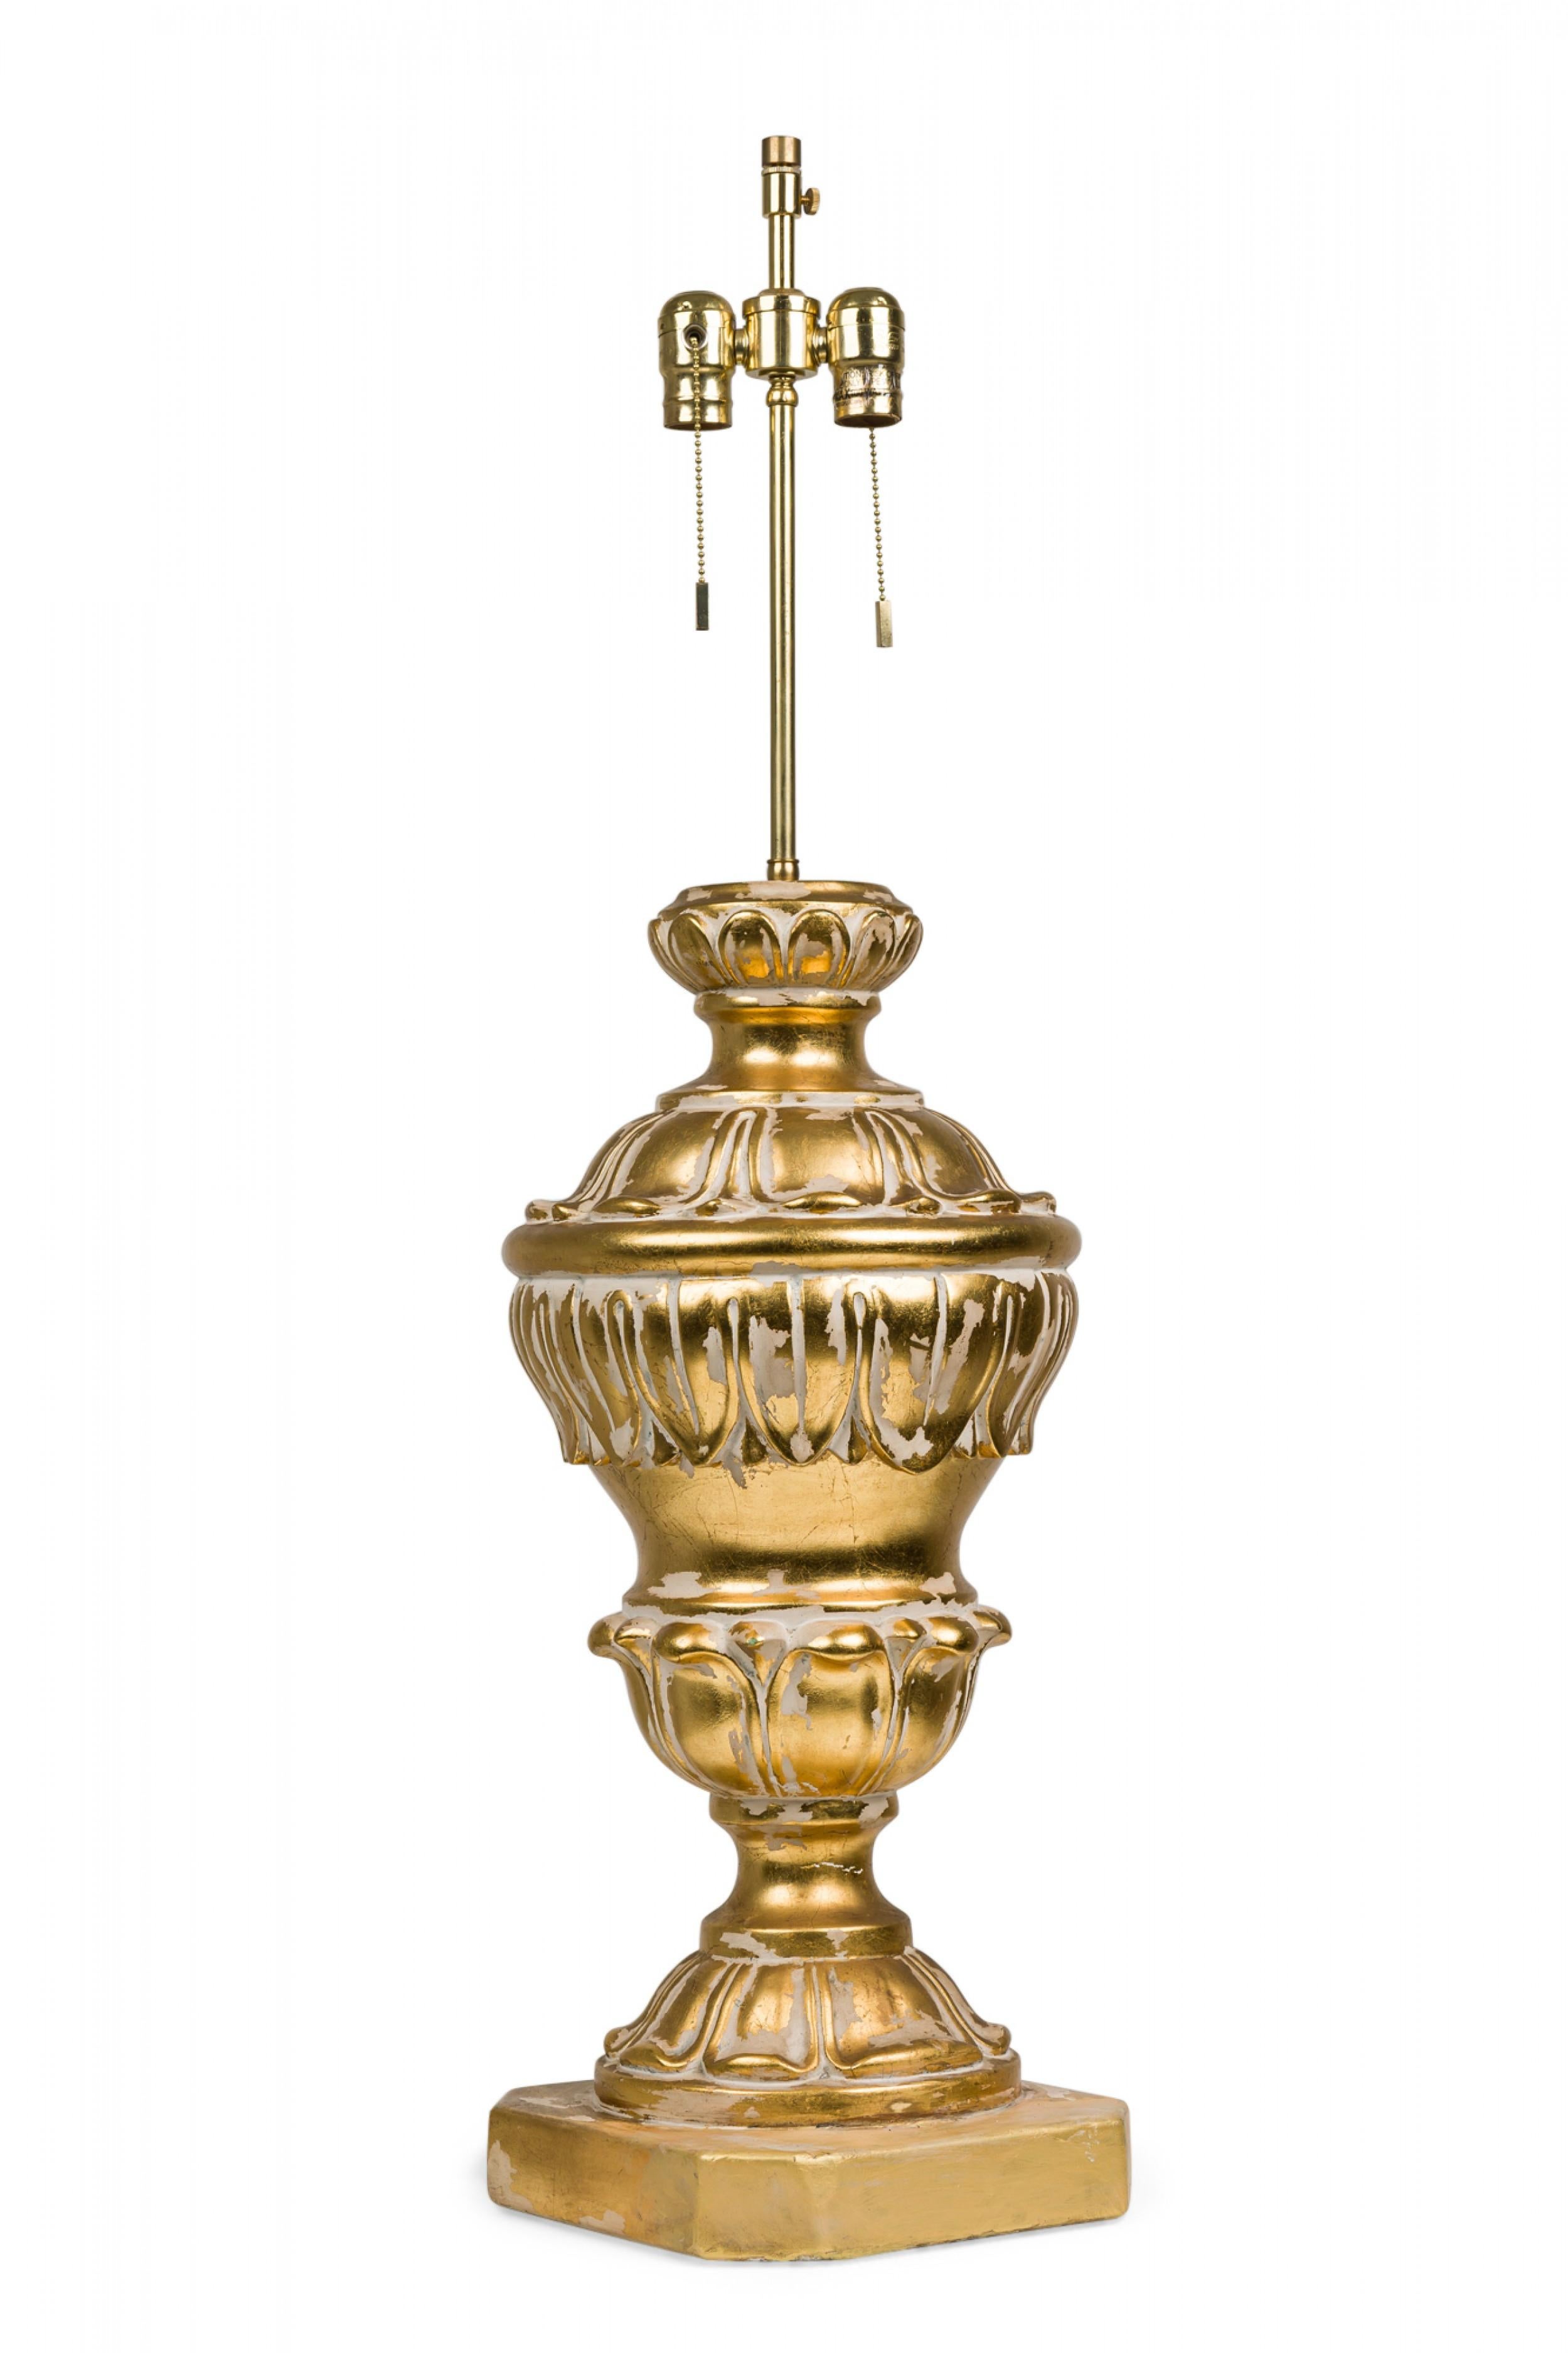 Pärchen amerikanischer Gips-Tischlampen aus der Mitte des Jahrhunderts in aufwändiger Balusterform, beide mit verlängerten Messingstielen und funktionsfähigen, perlenförmigen Lichtschalterfassungen, geformt in neoklassizistischer Schneckenform mit